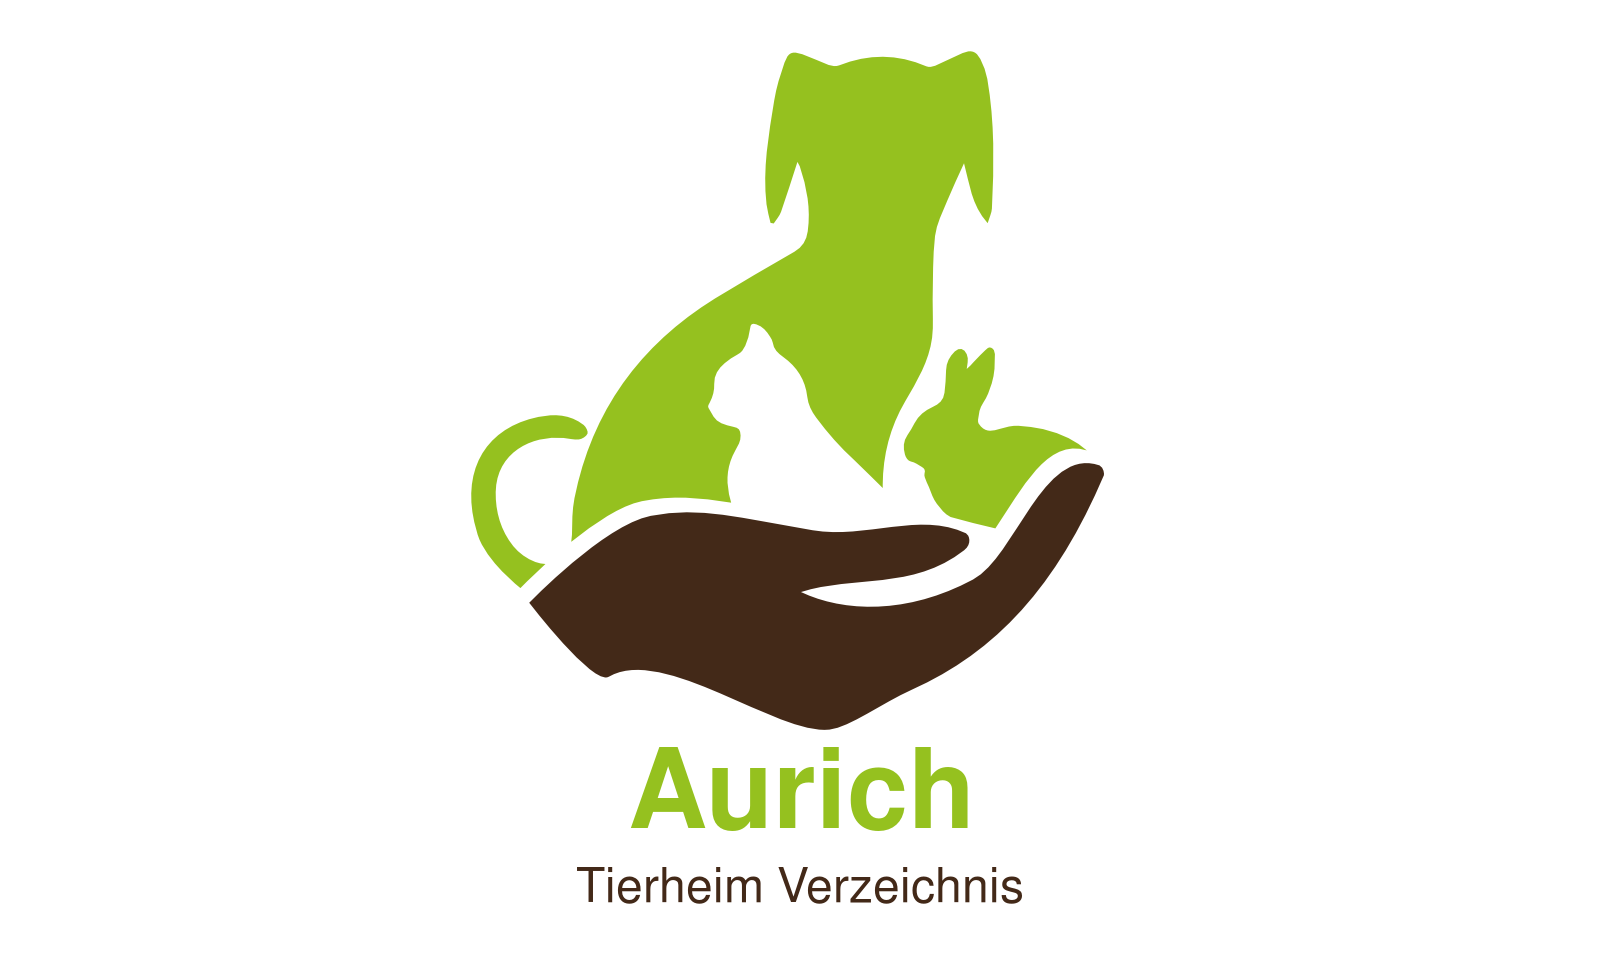 Tierheim Aurich